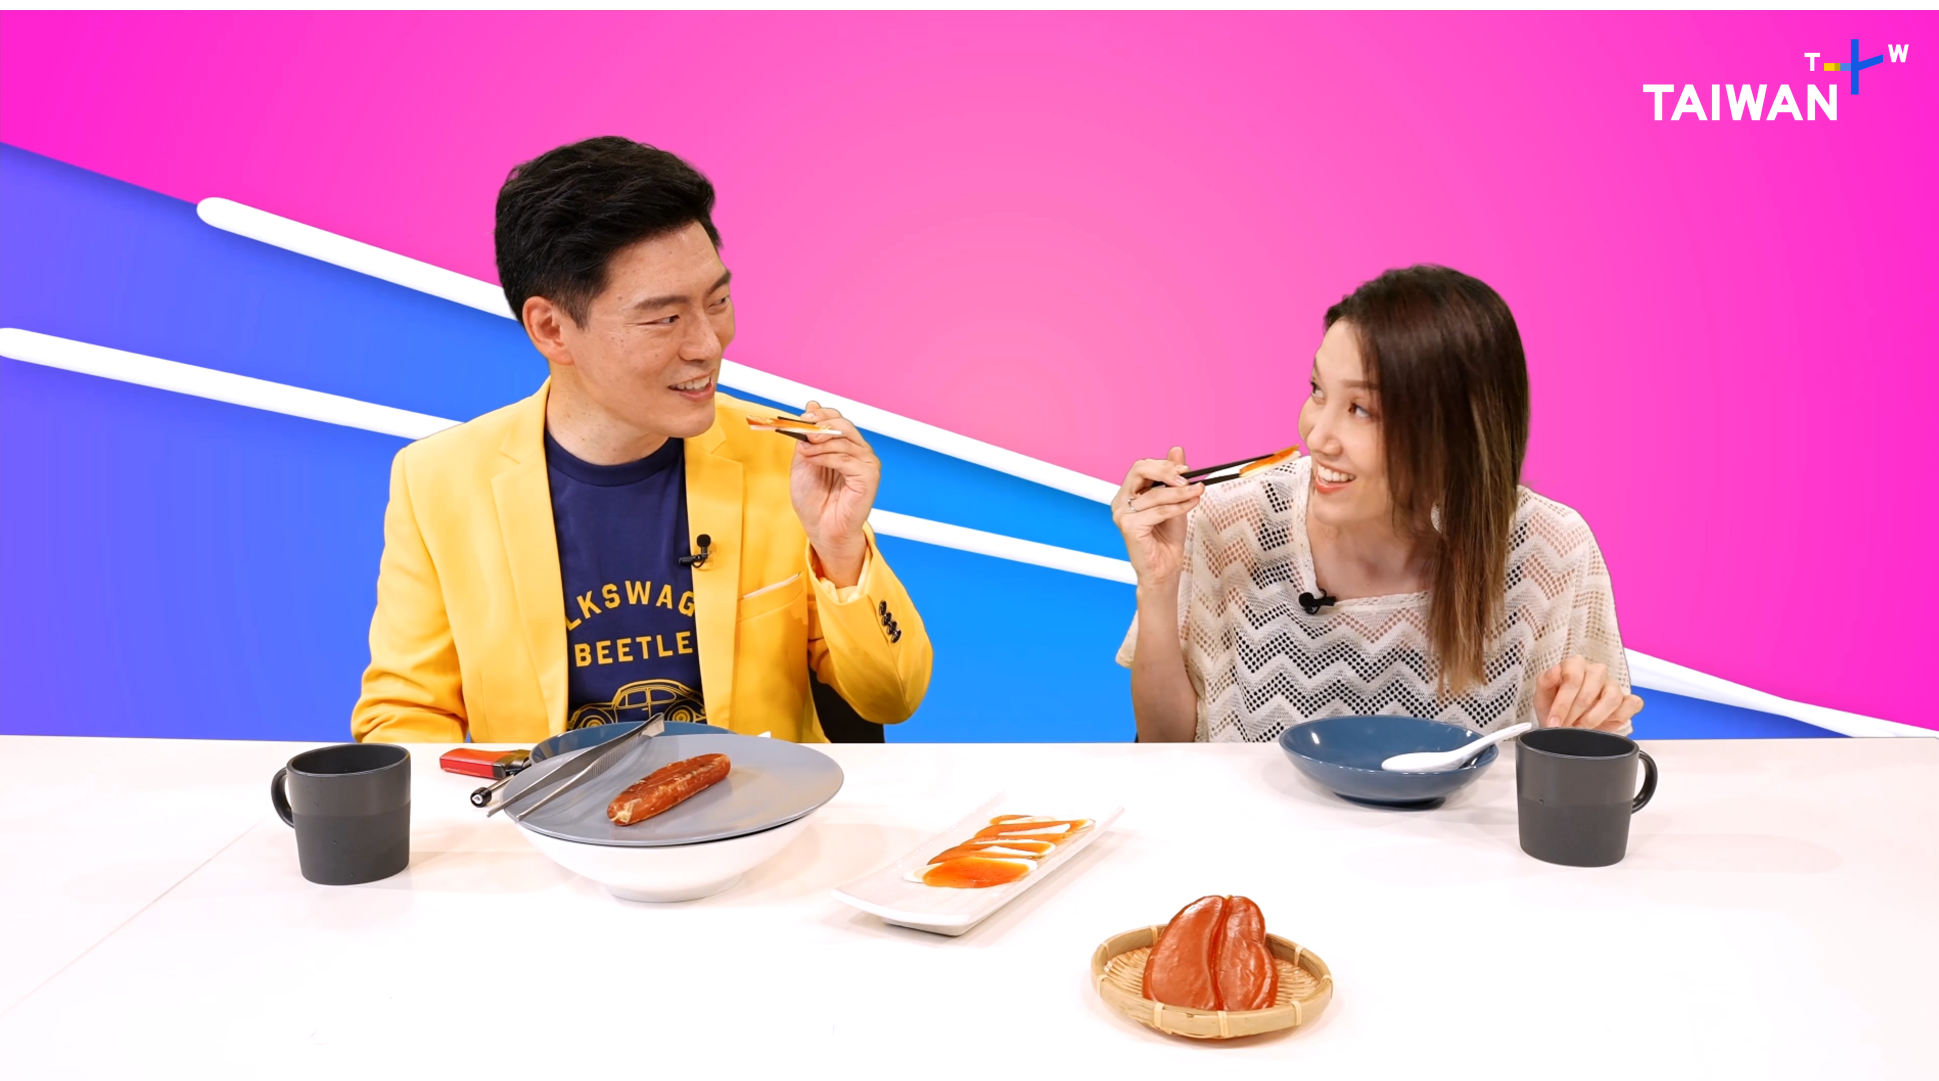 台湾初の英語メディア「TaiwanPlus」
多様性溢れる台湾料理の魅力を動画で配信　
ベジタリアン先進国ならではのコンテンツを展開